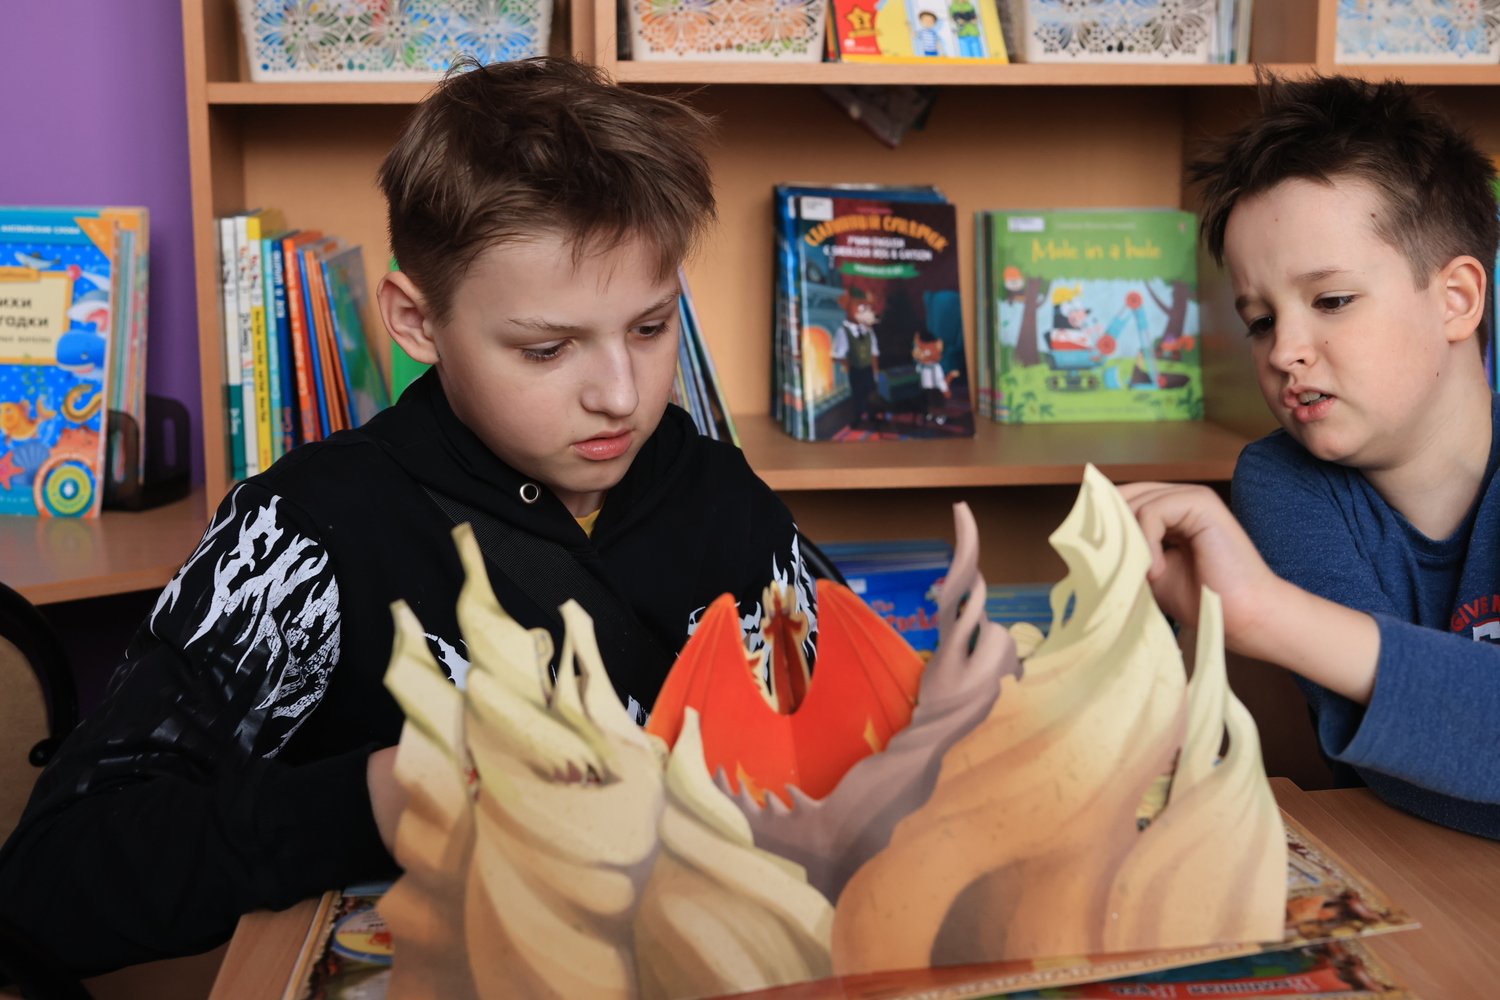 Сегодня отмечается Межднародный день детской книги. Смотрим фото и удивляемся